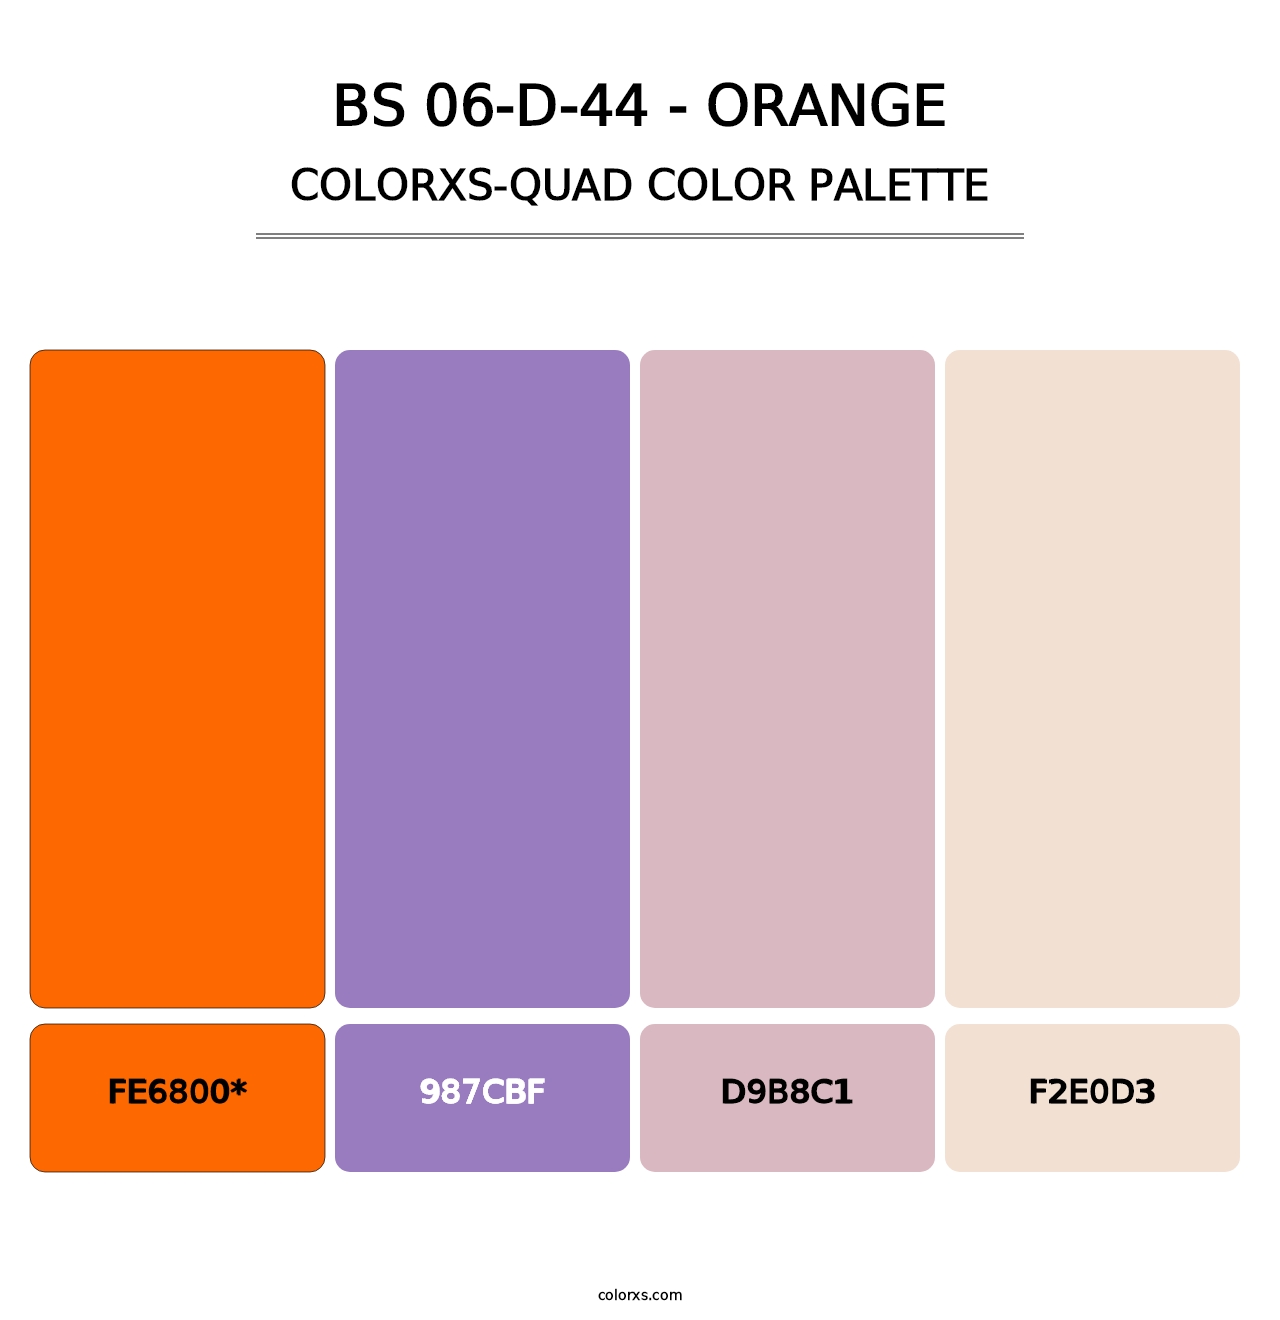 BS 06-D-44 - Orange - Colorxs Quad Palette